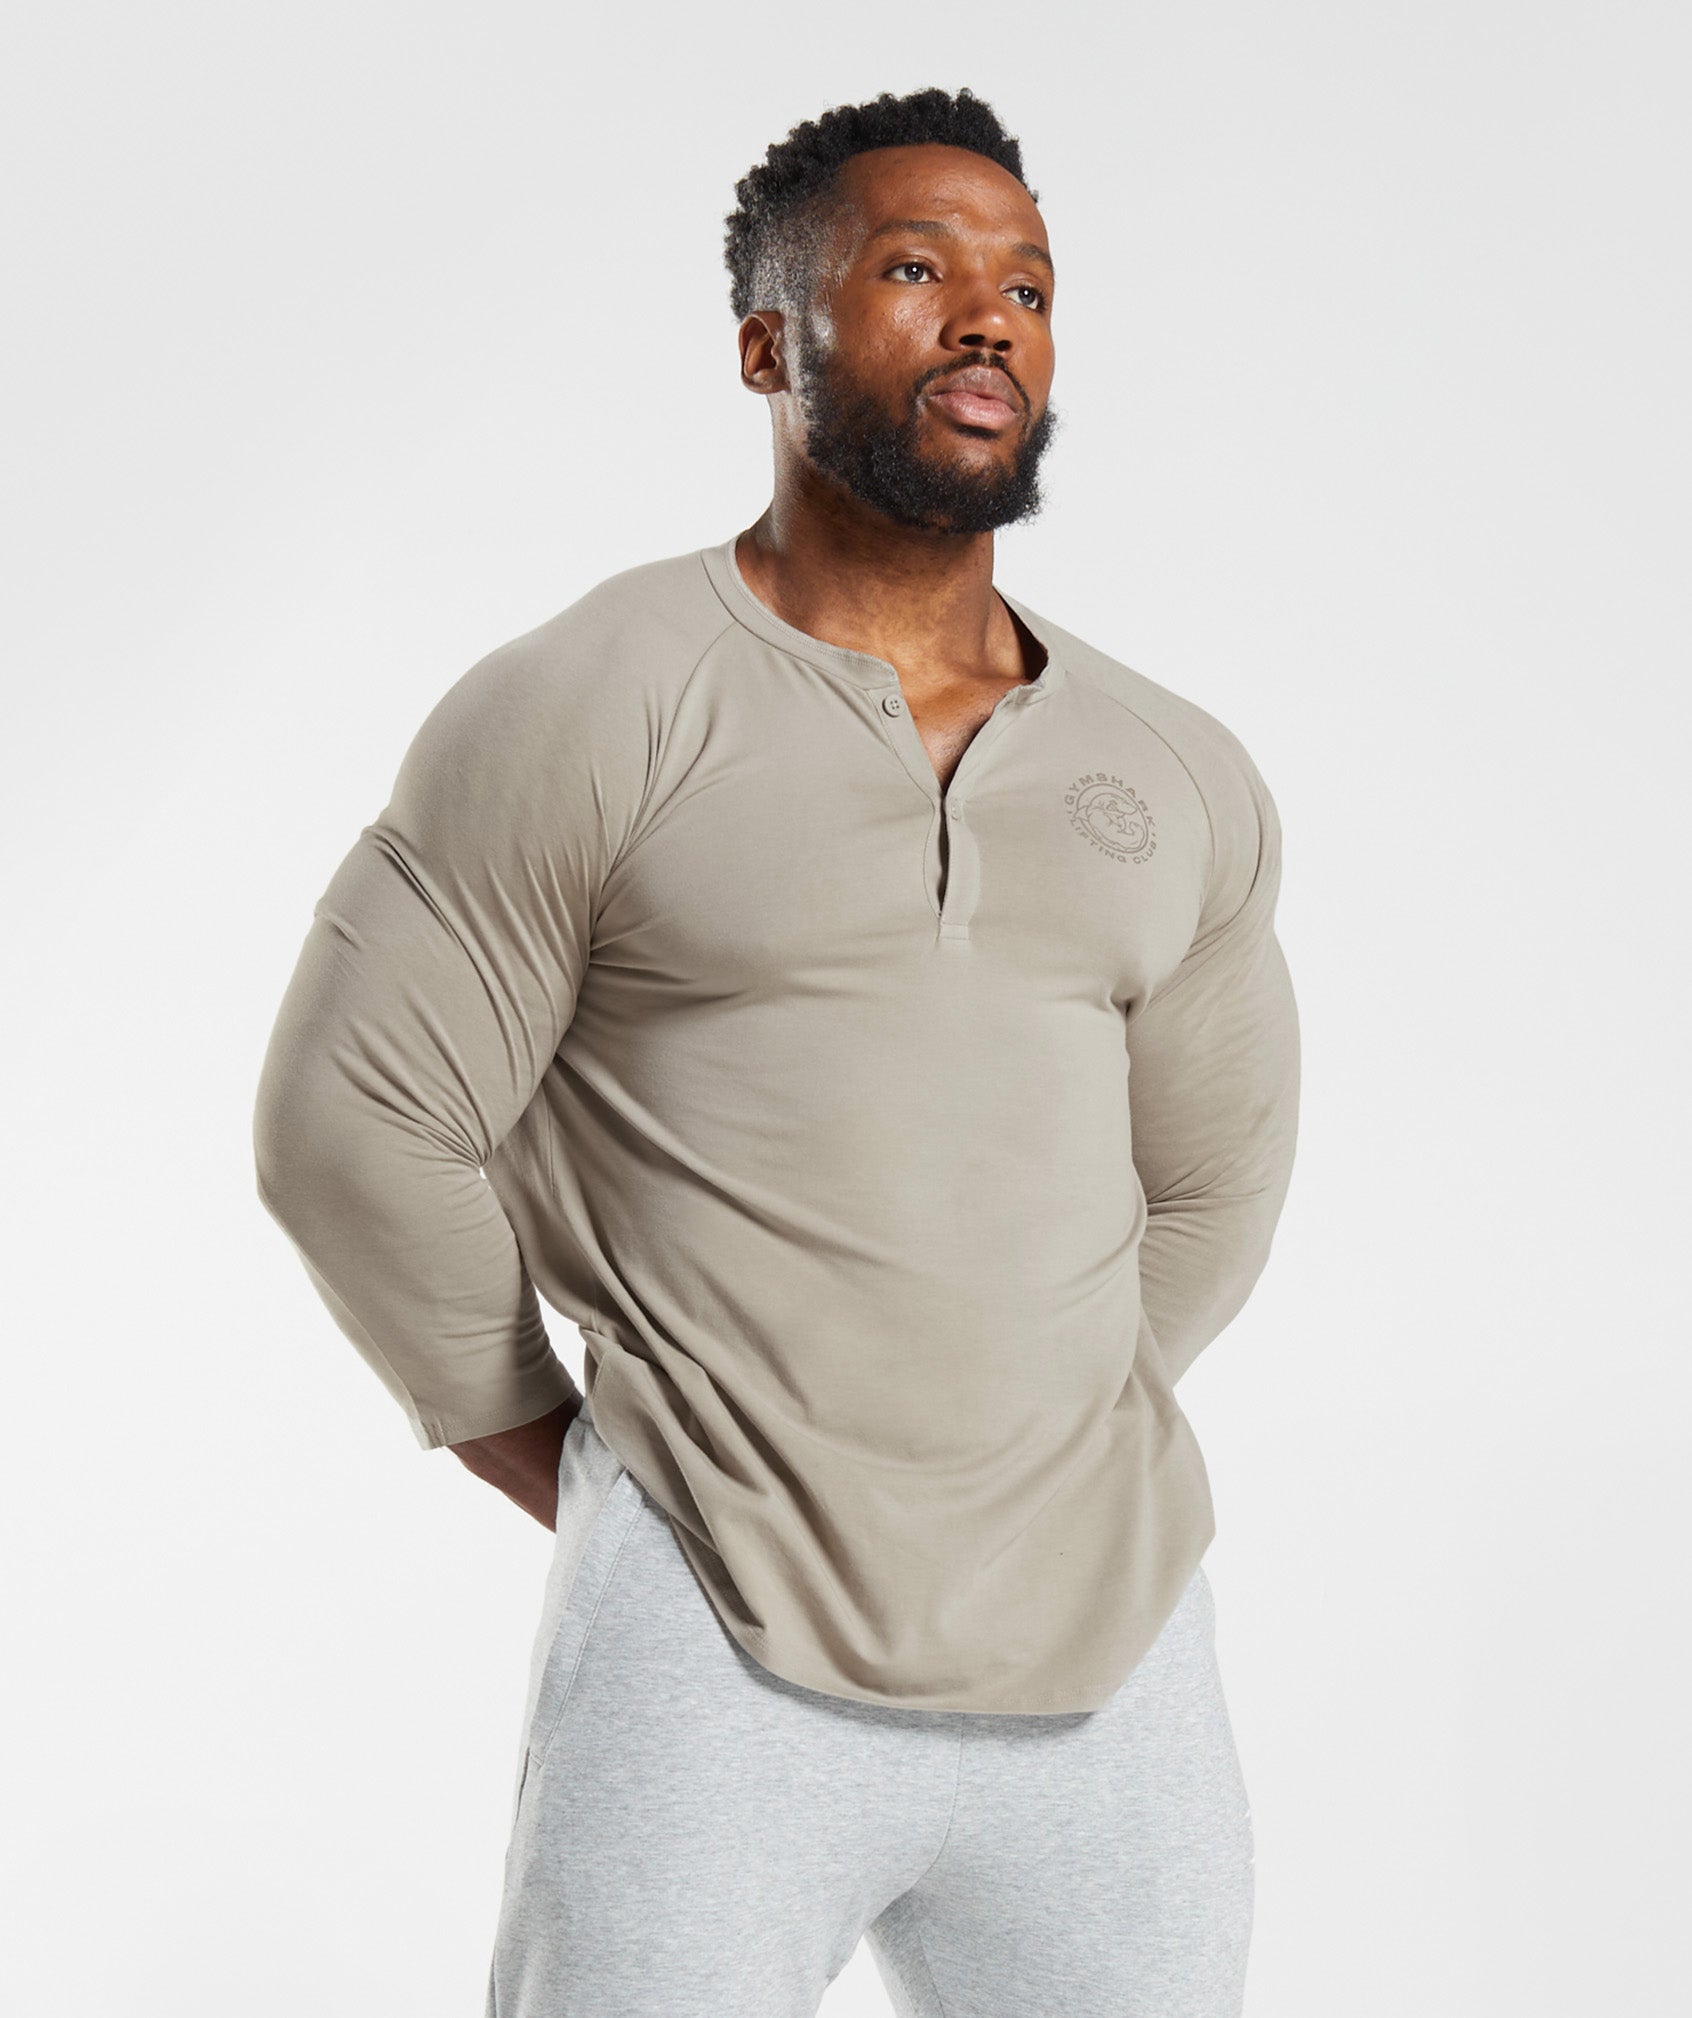 Long Sleeve Gym Tops For Men - Gymshark